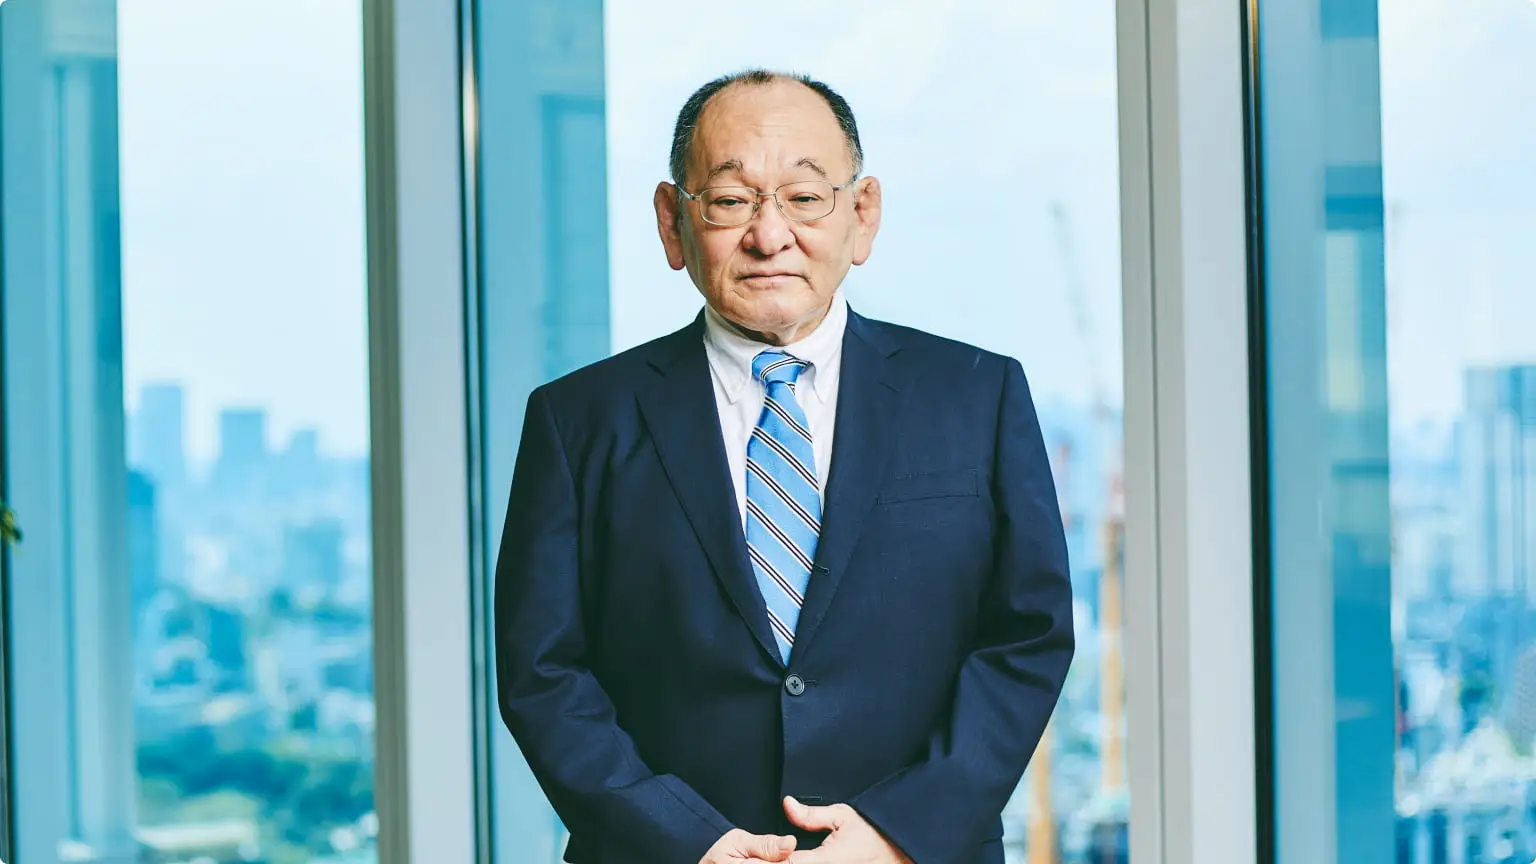 CEO kitayama masaichi